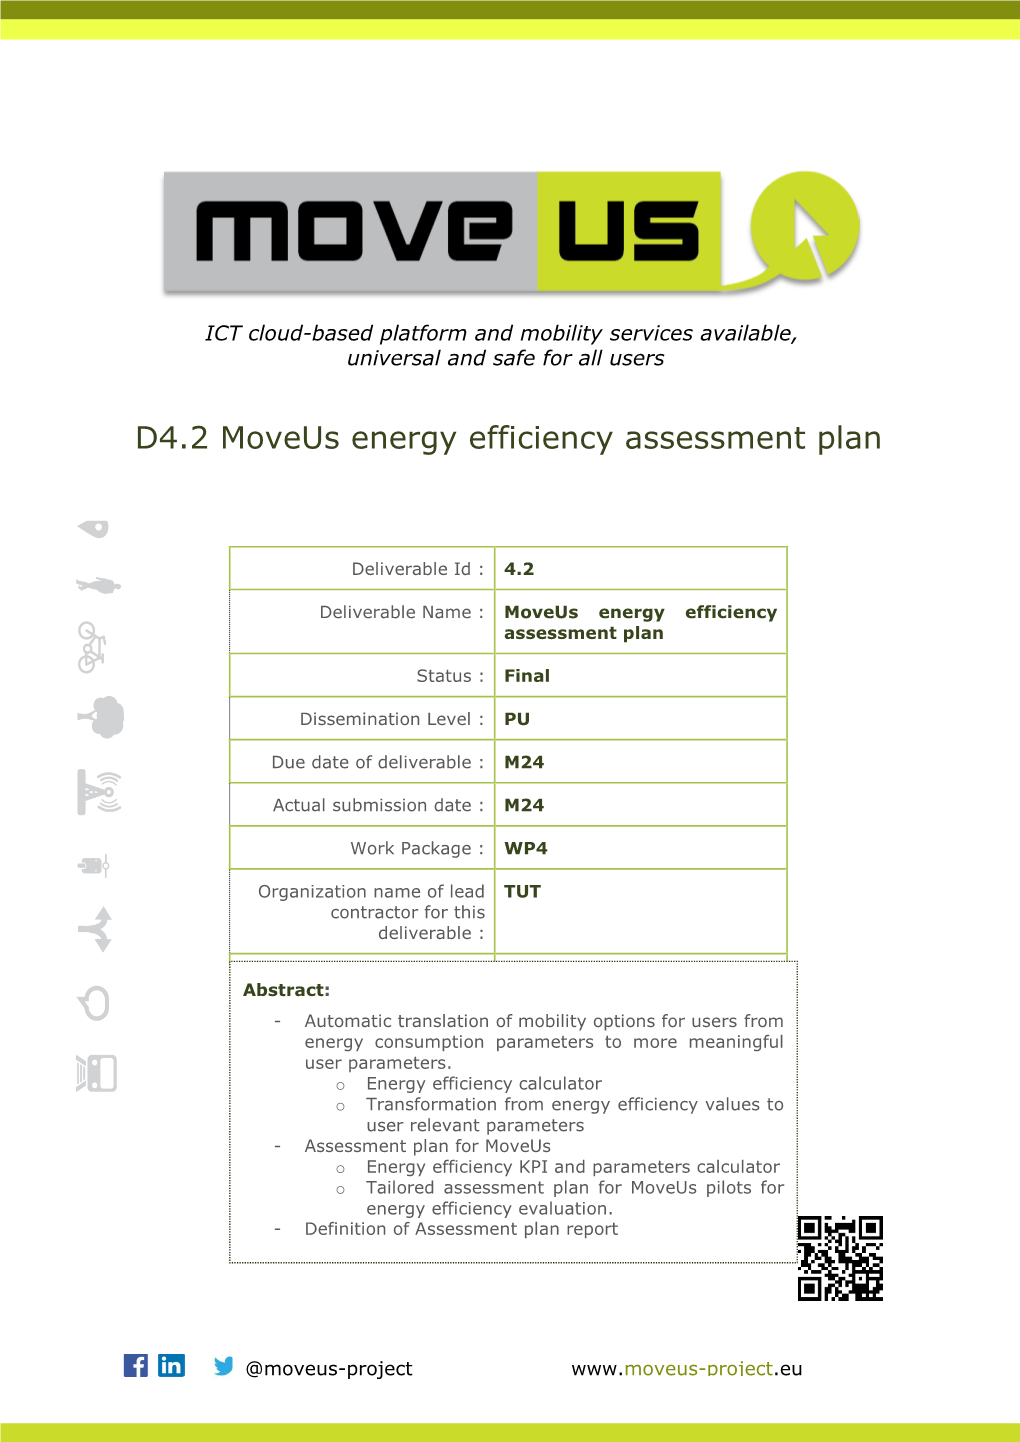 D4.2 Moveus Energy Efficiency Assessment Plan